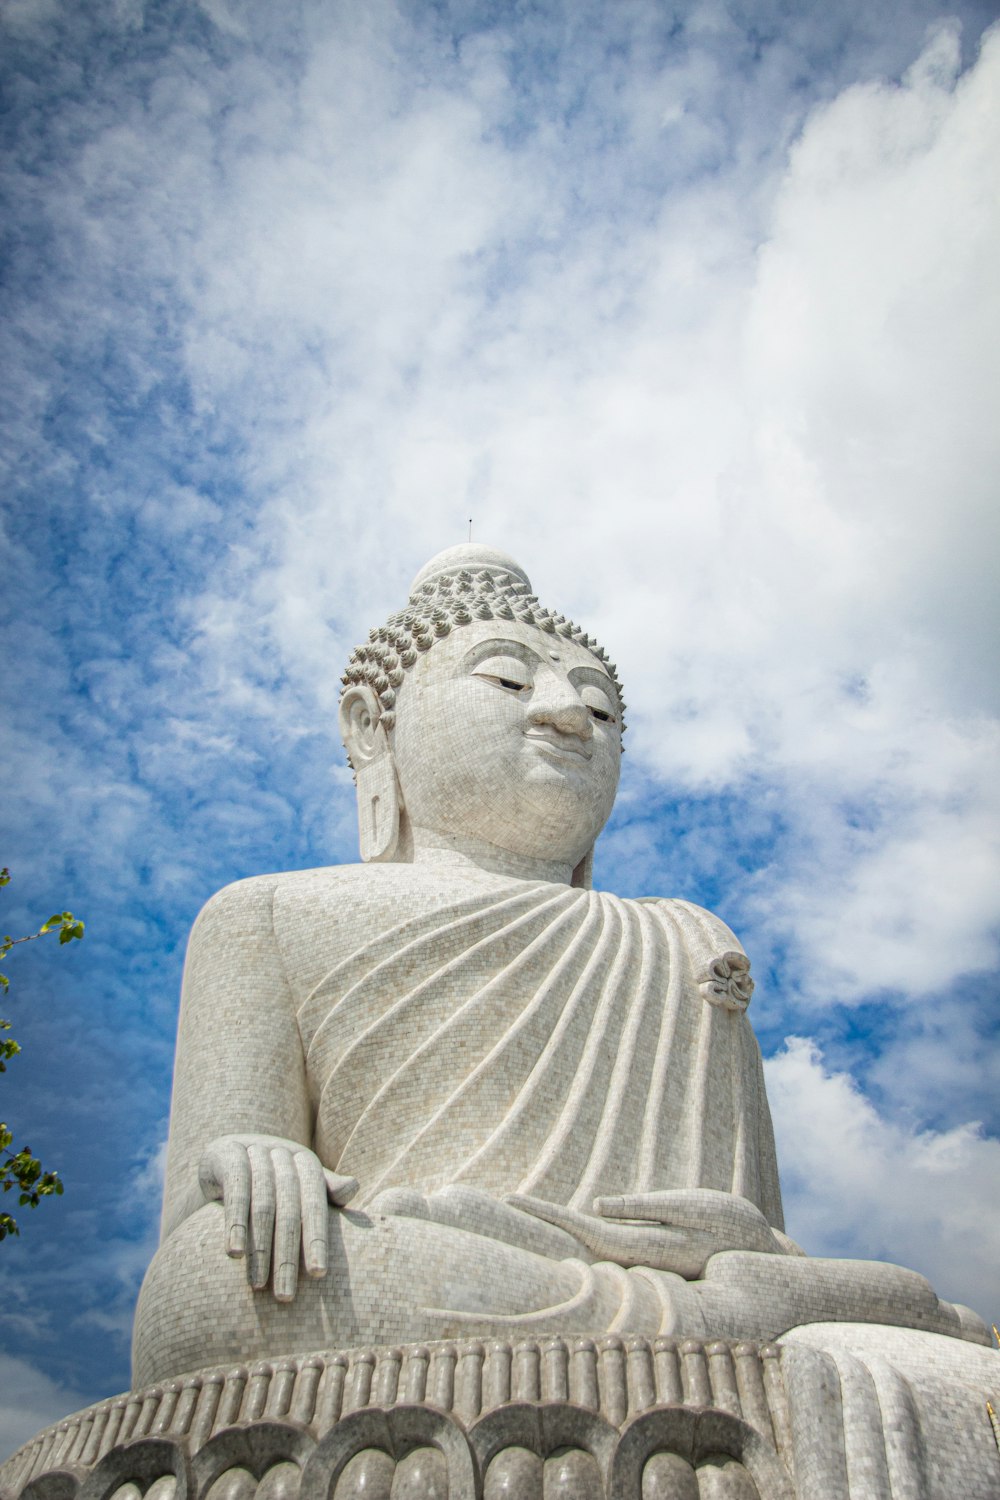 Una gran estatua de Buda sentada bajo un cielo azul nublado